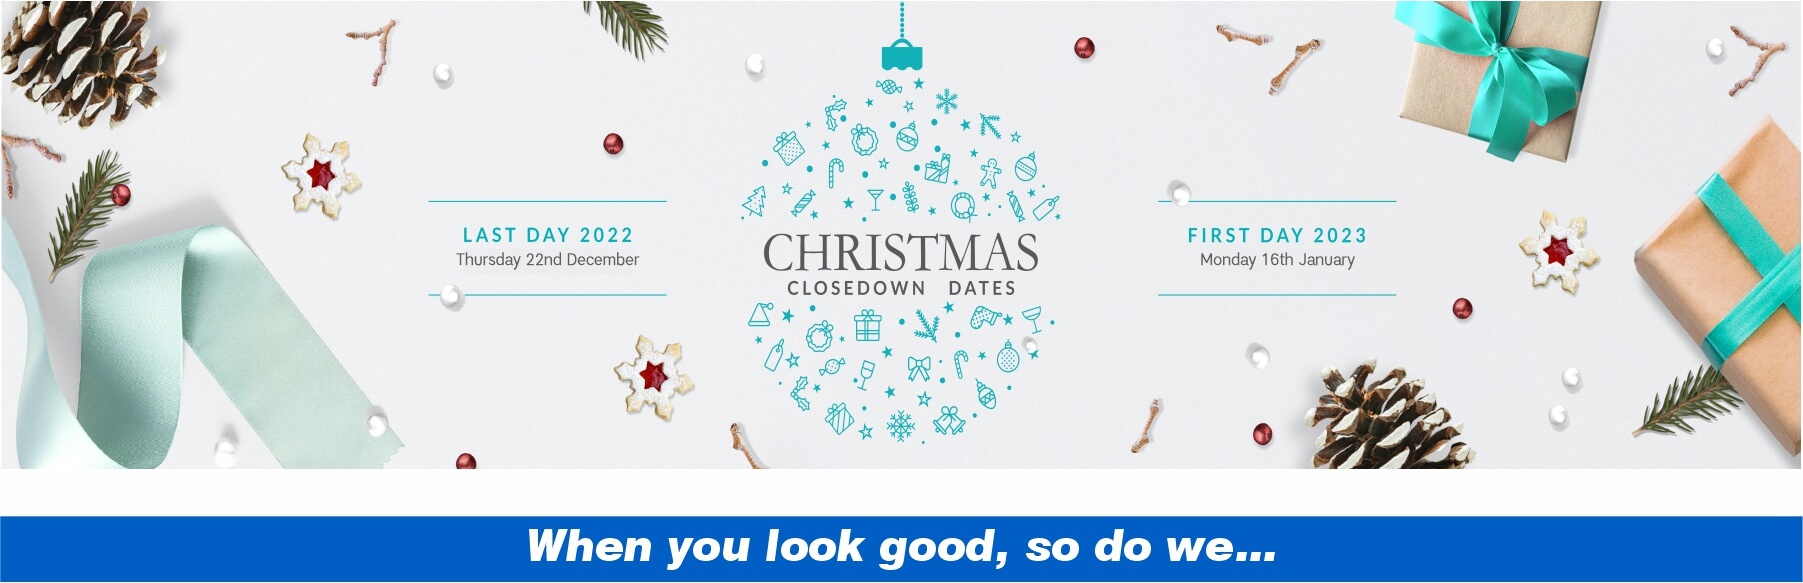 Christmas 2022 – banners for web site (nov 2022)